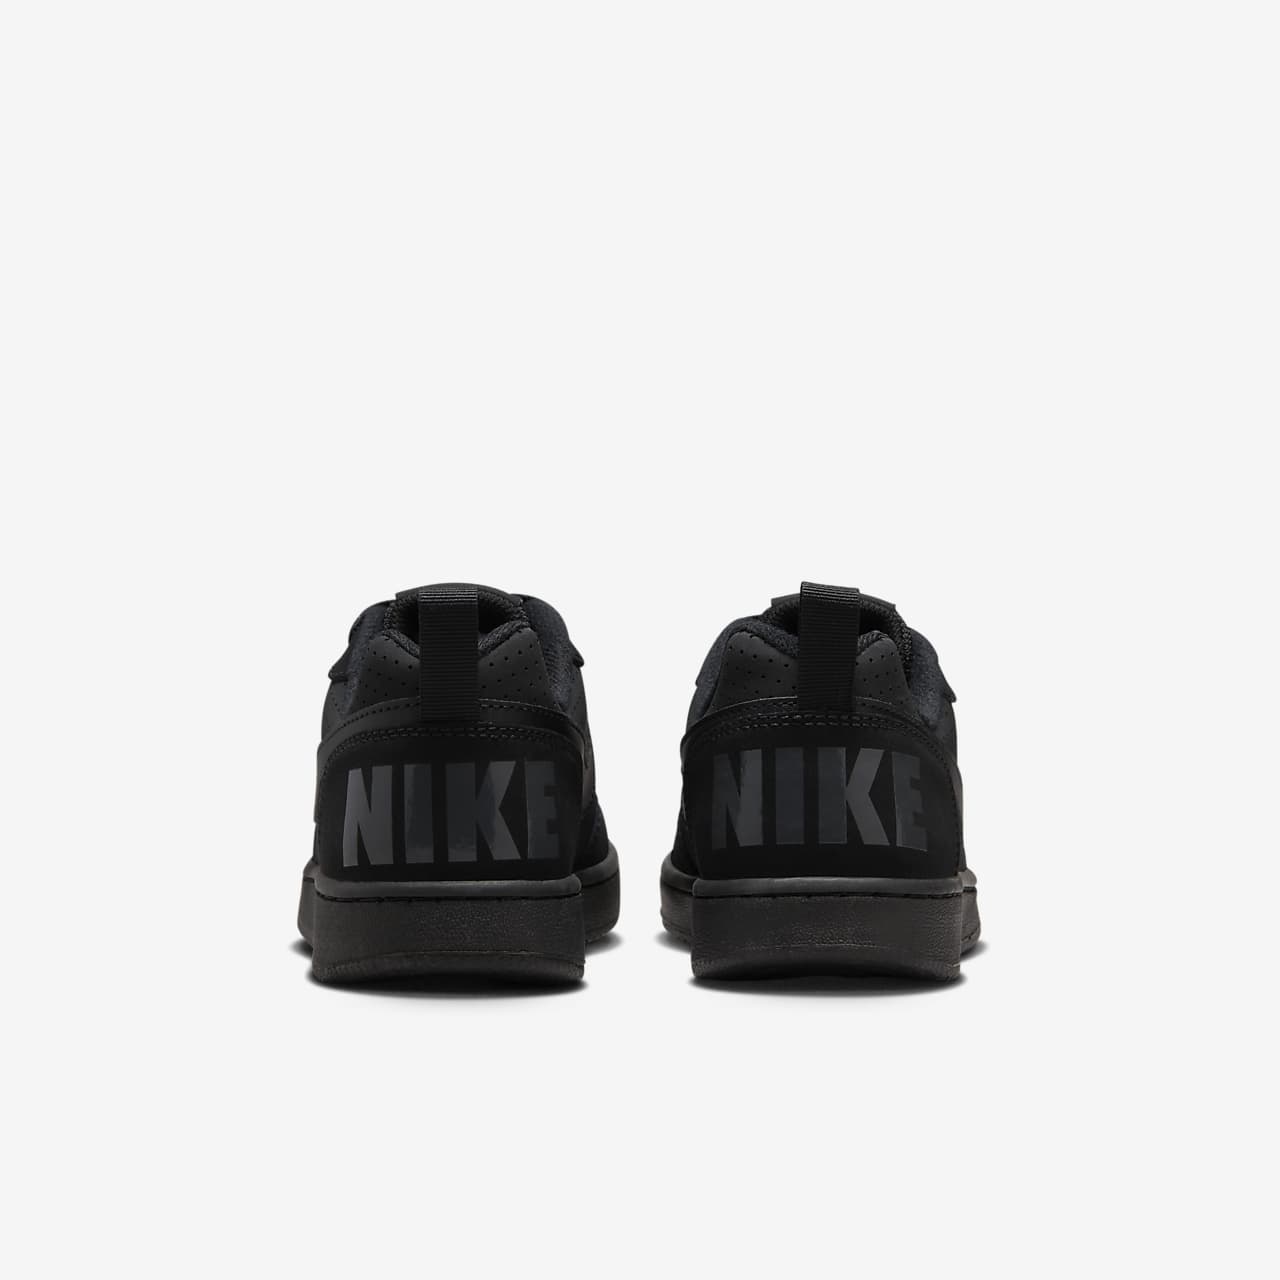 zapatillas negras niño nike where can i buy 16428 076ec